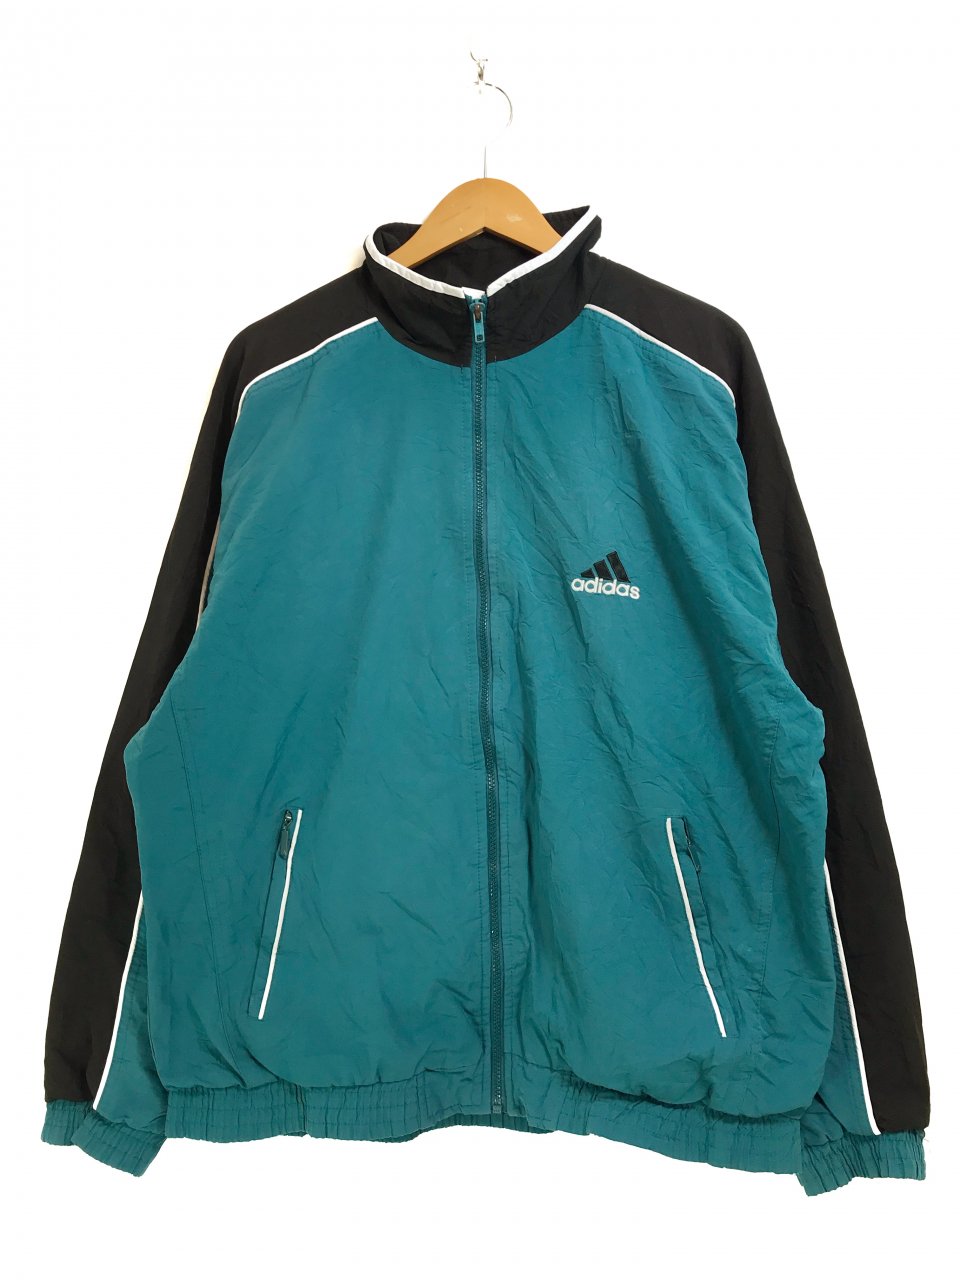 90s adidas Logo Nylon Jacket 青黒 L アディダス ナイロンジャケット パフォーマンスロゴ 刺繍 エメラルドグリーン  ブラック NEWJOKE ONLINE STORE